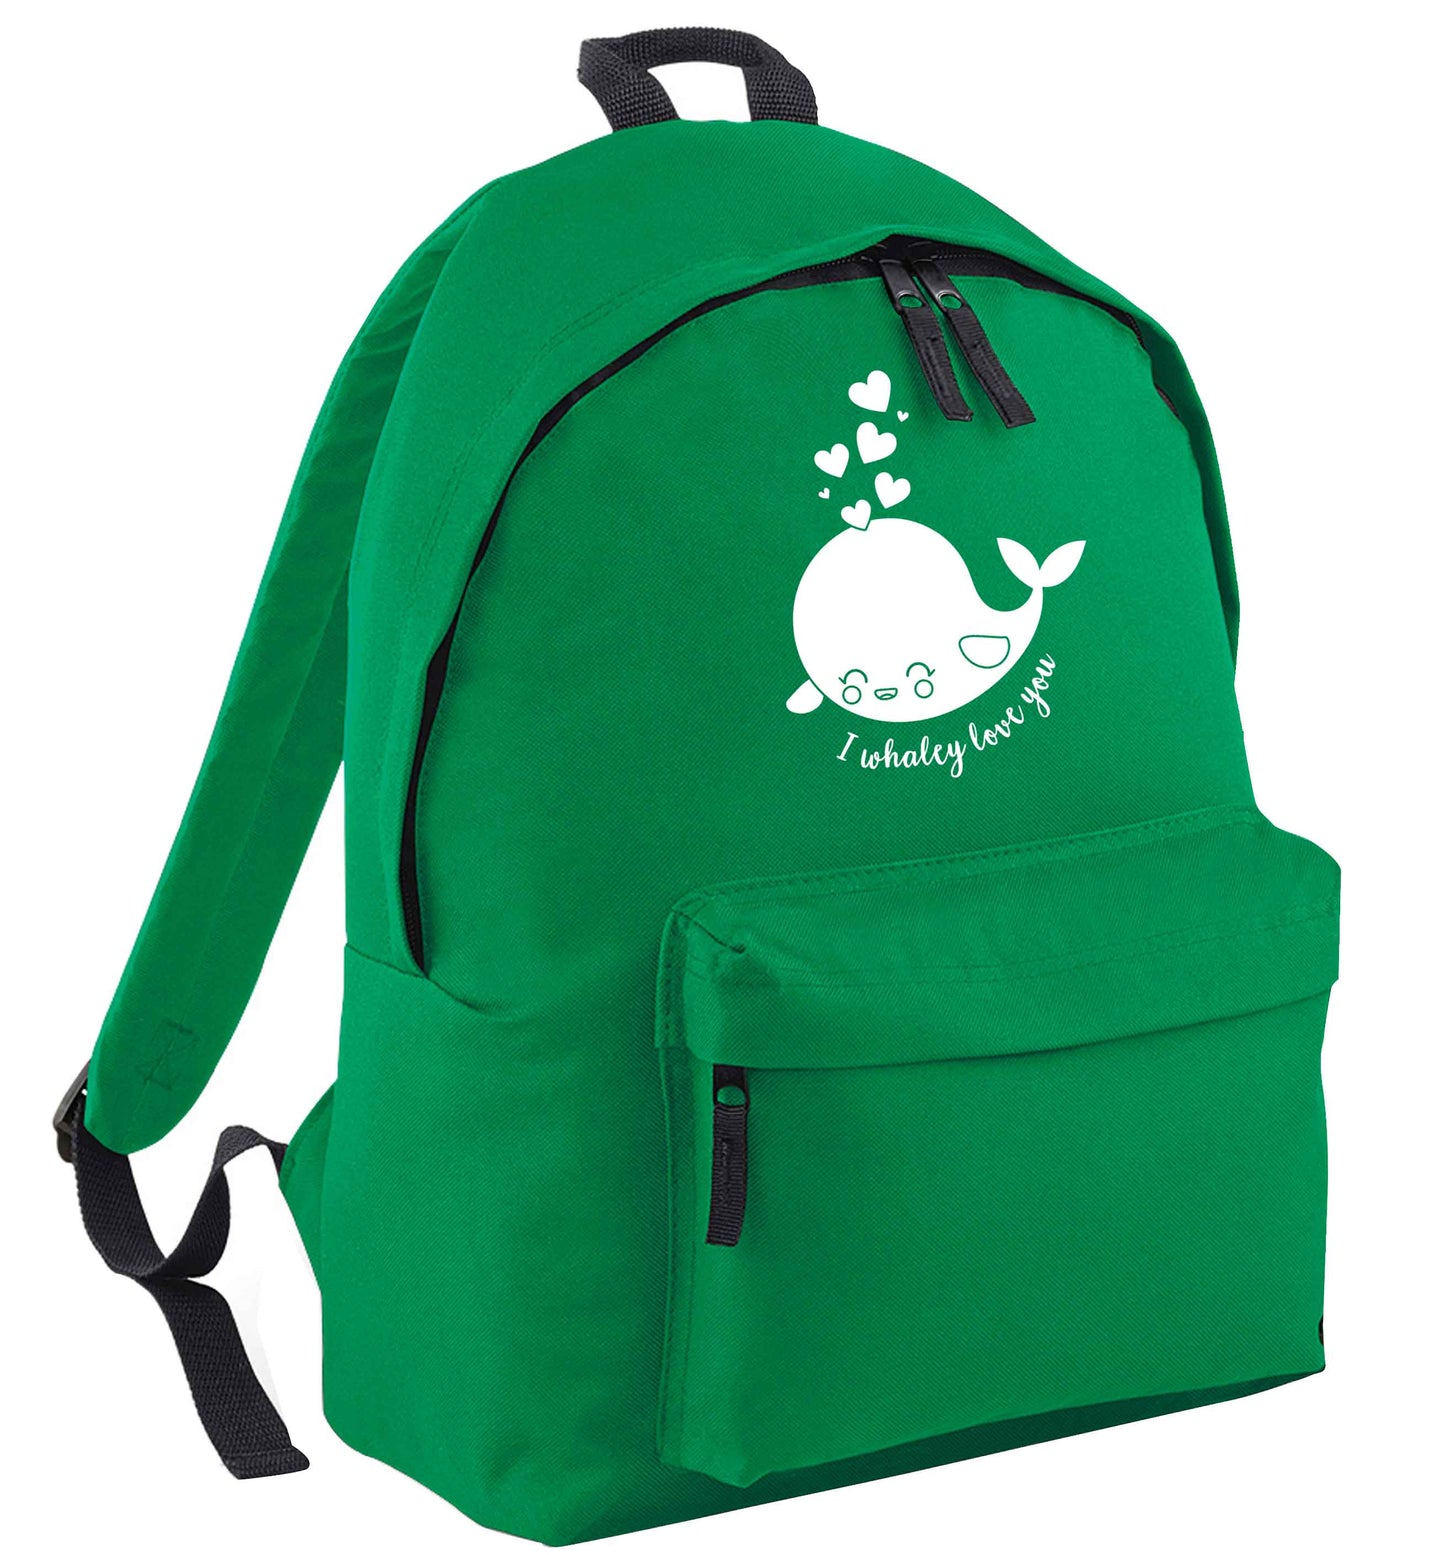 I whaley love you green adults backpack